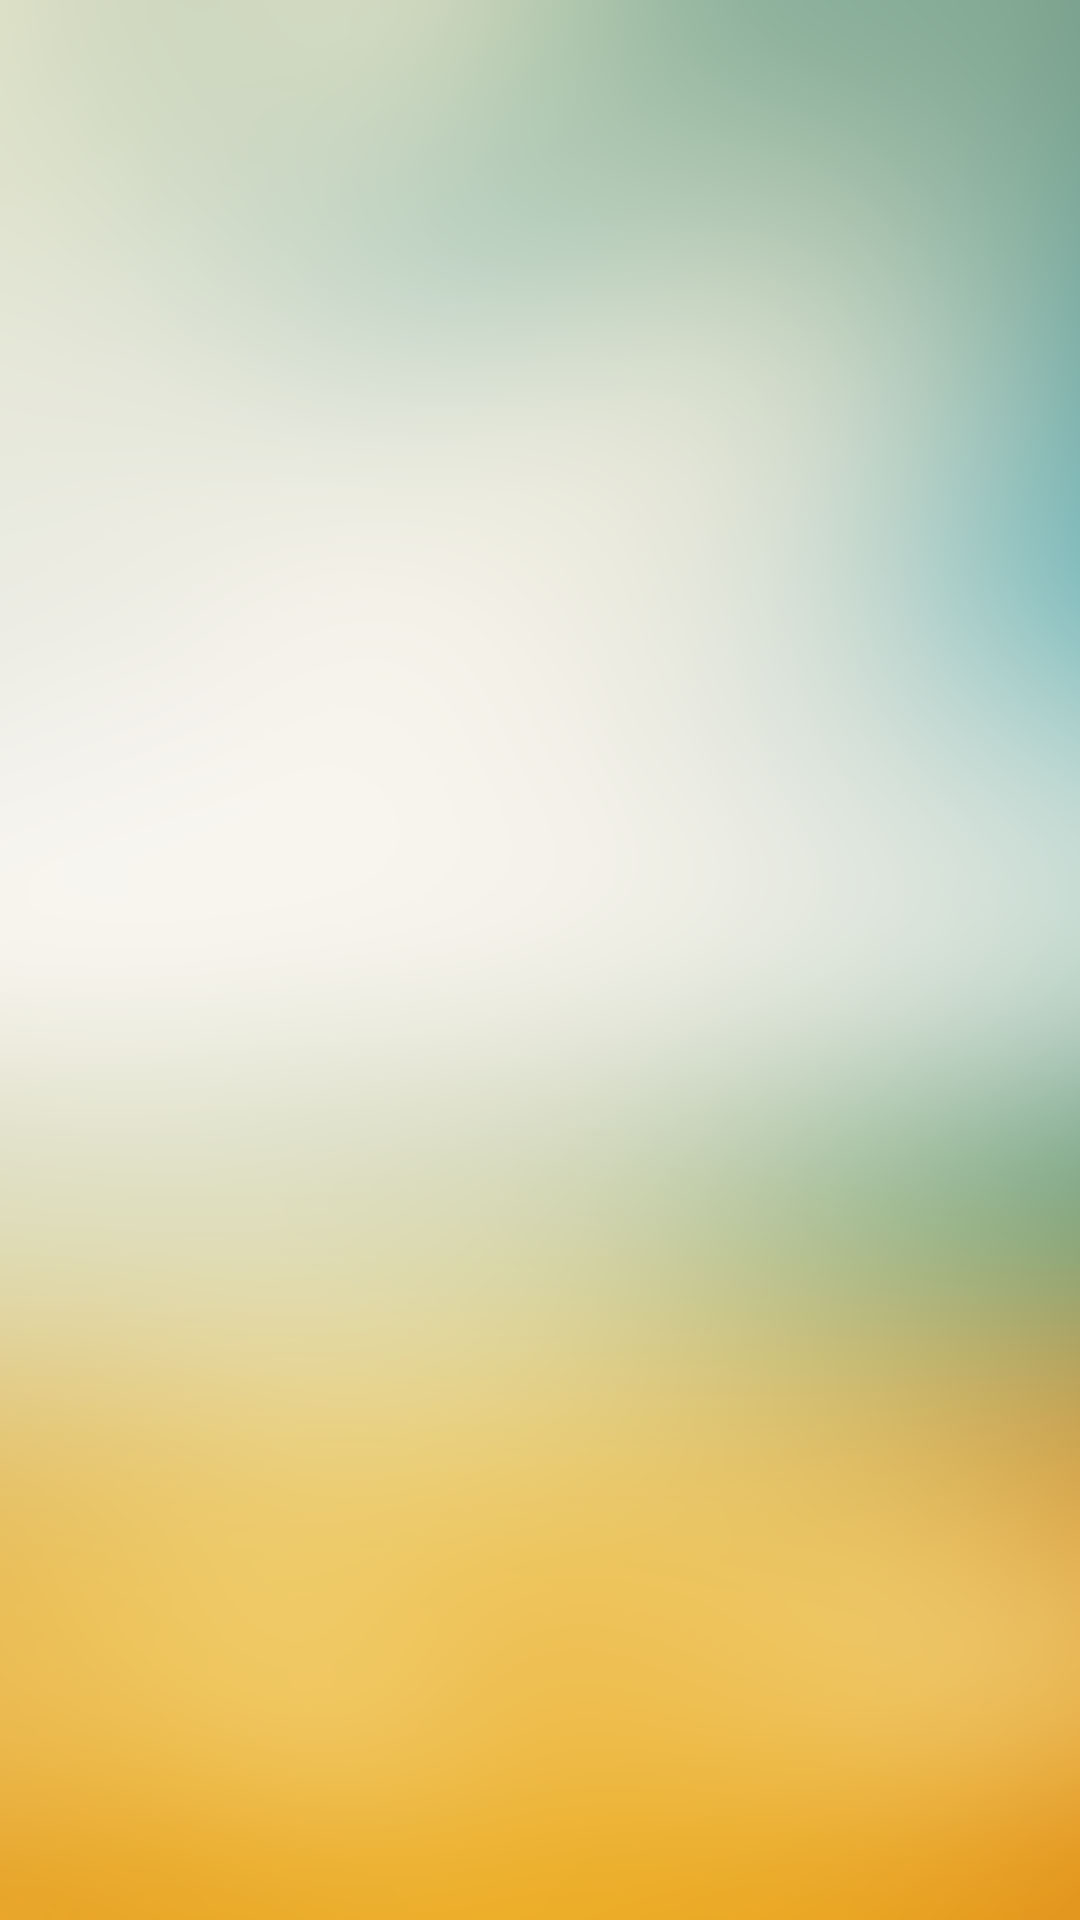 1080x1920 Ocean Beach Blur HTC Android Wallpaper ...